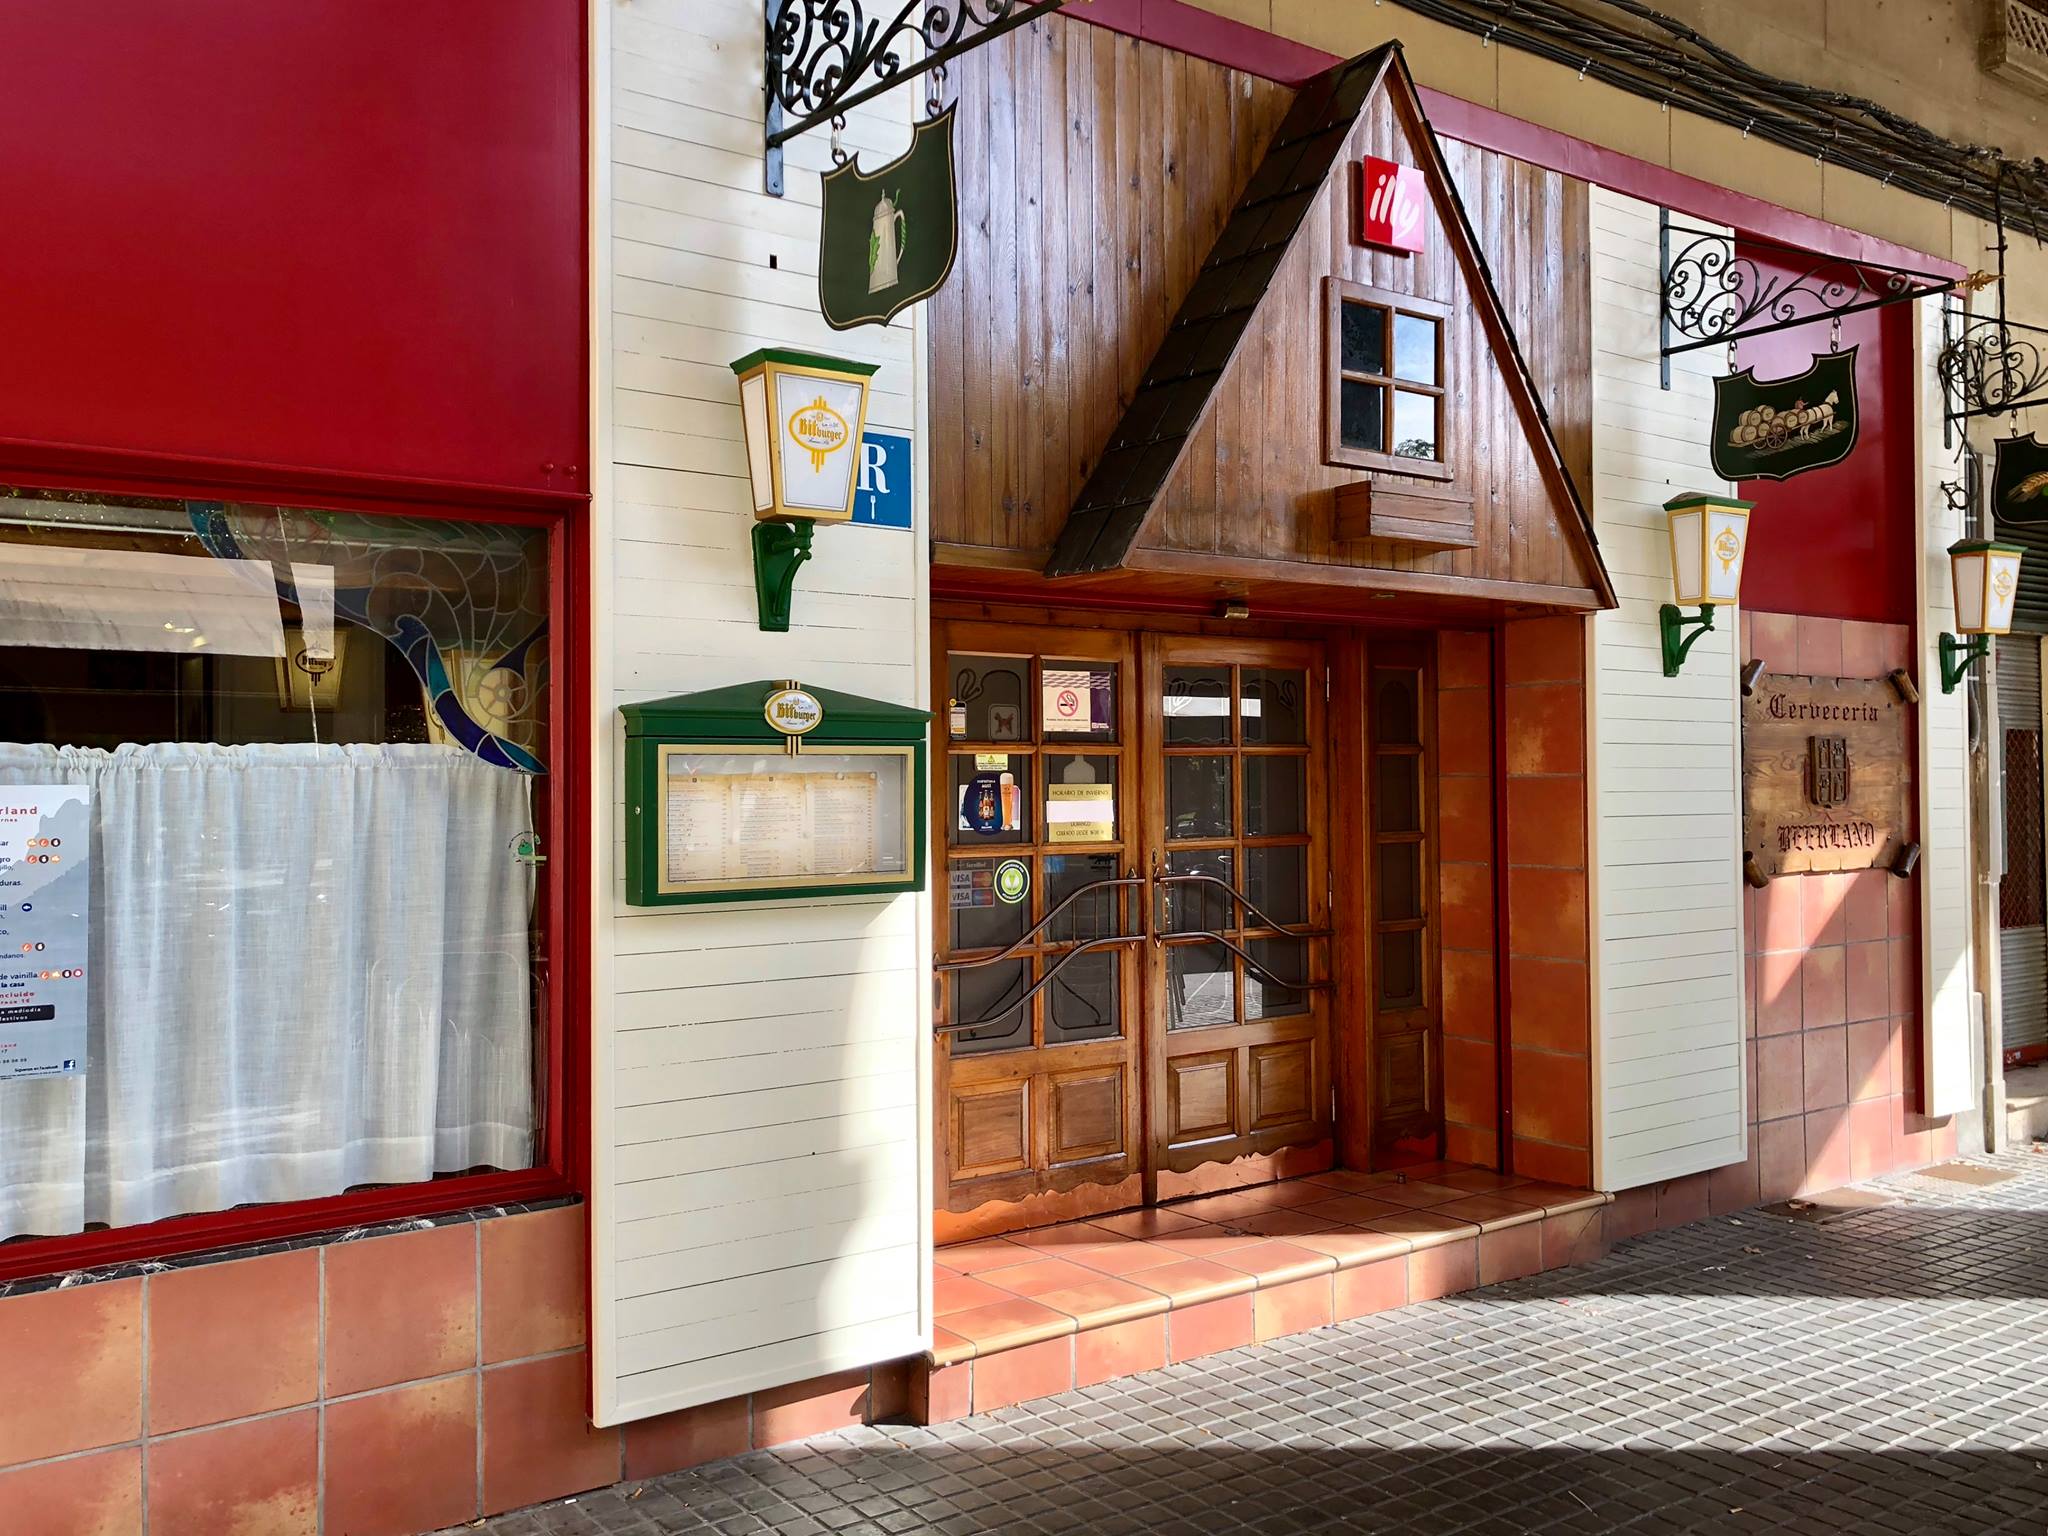 Cervecería y Restaurante Beerland, Plaza San Francisco 17, Zaragoza